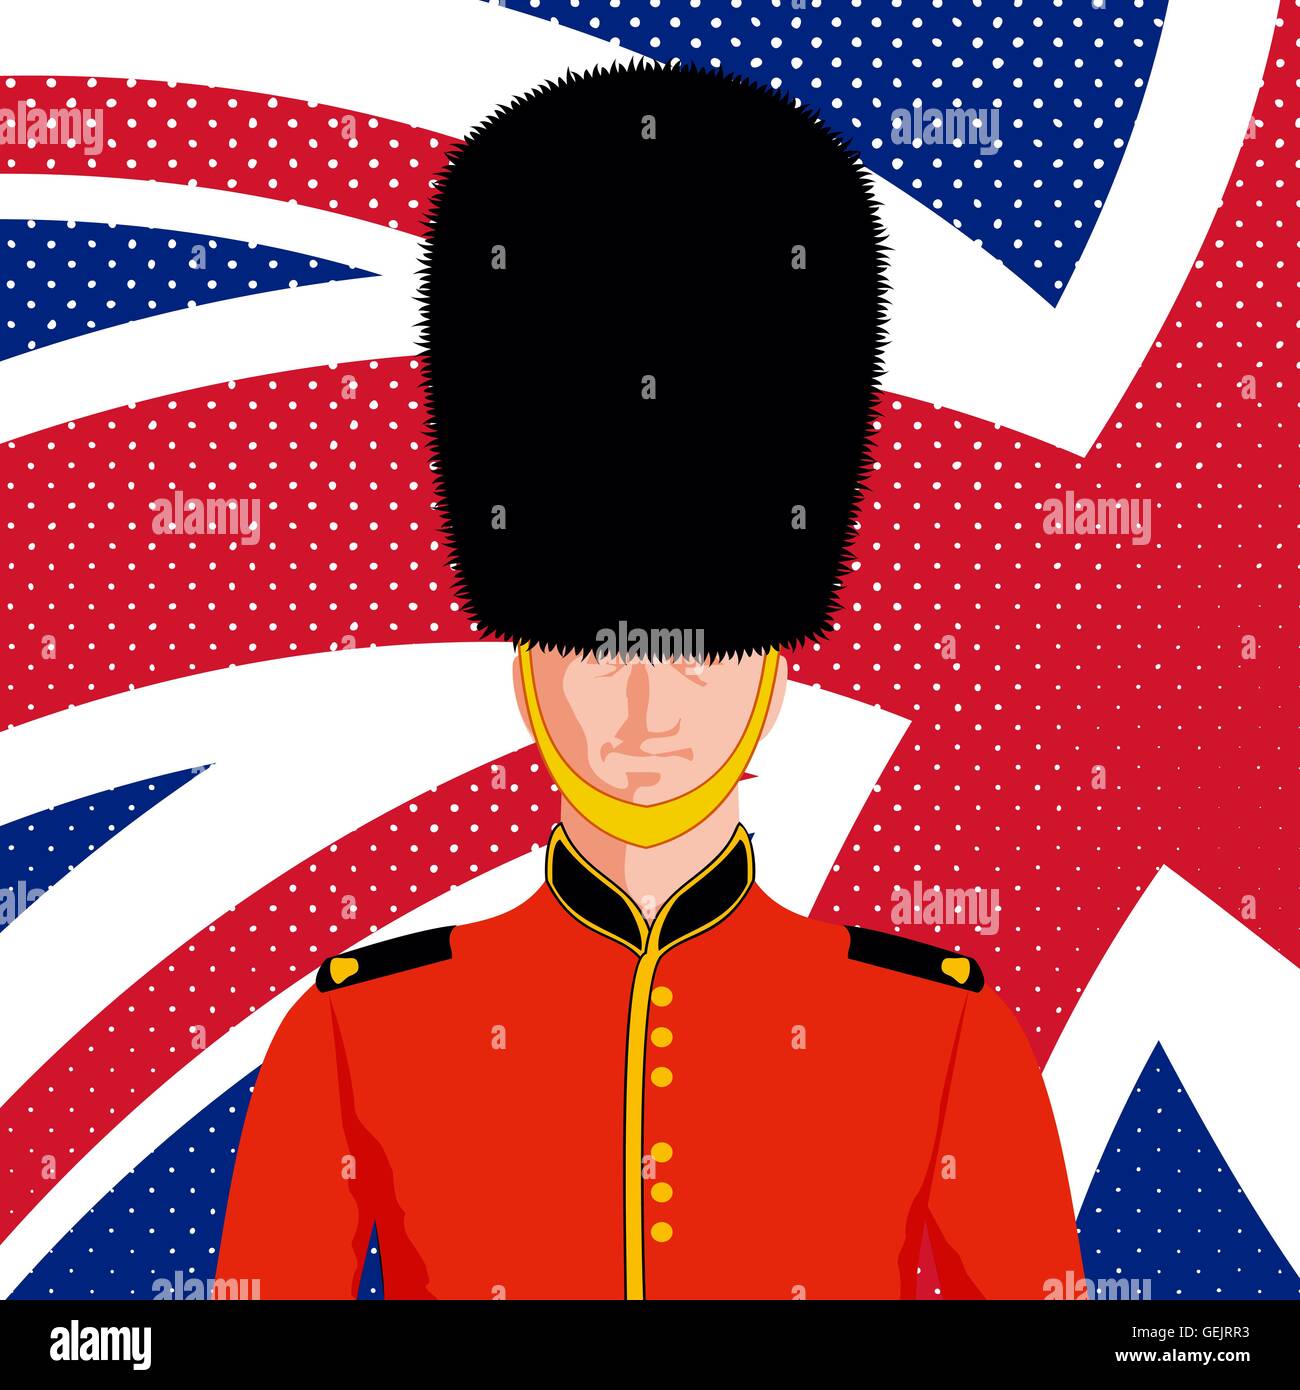 Royal British guard Stock Vector